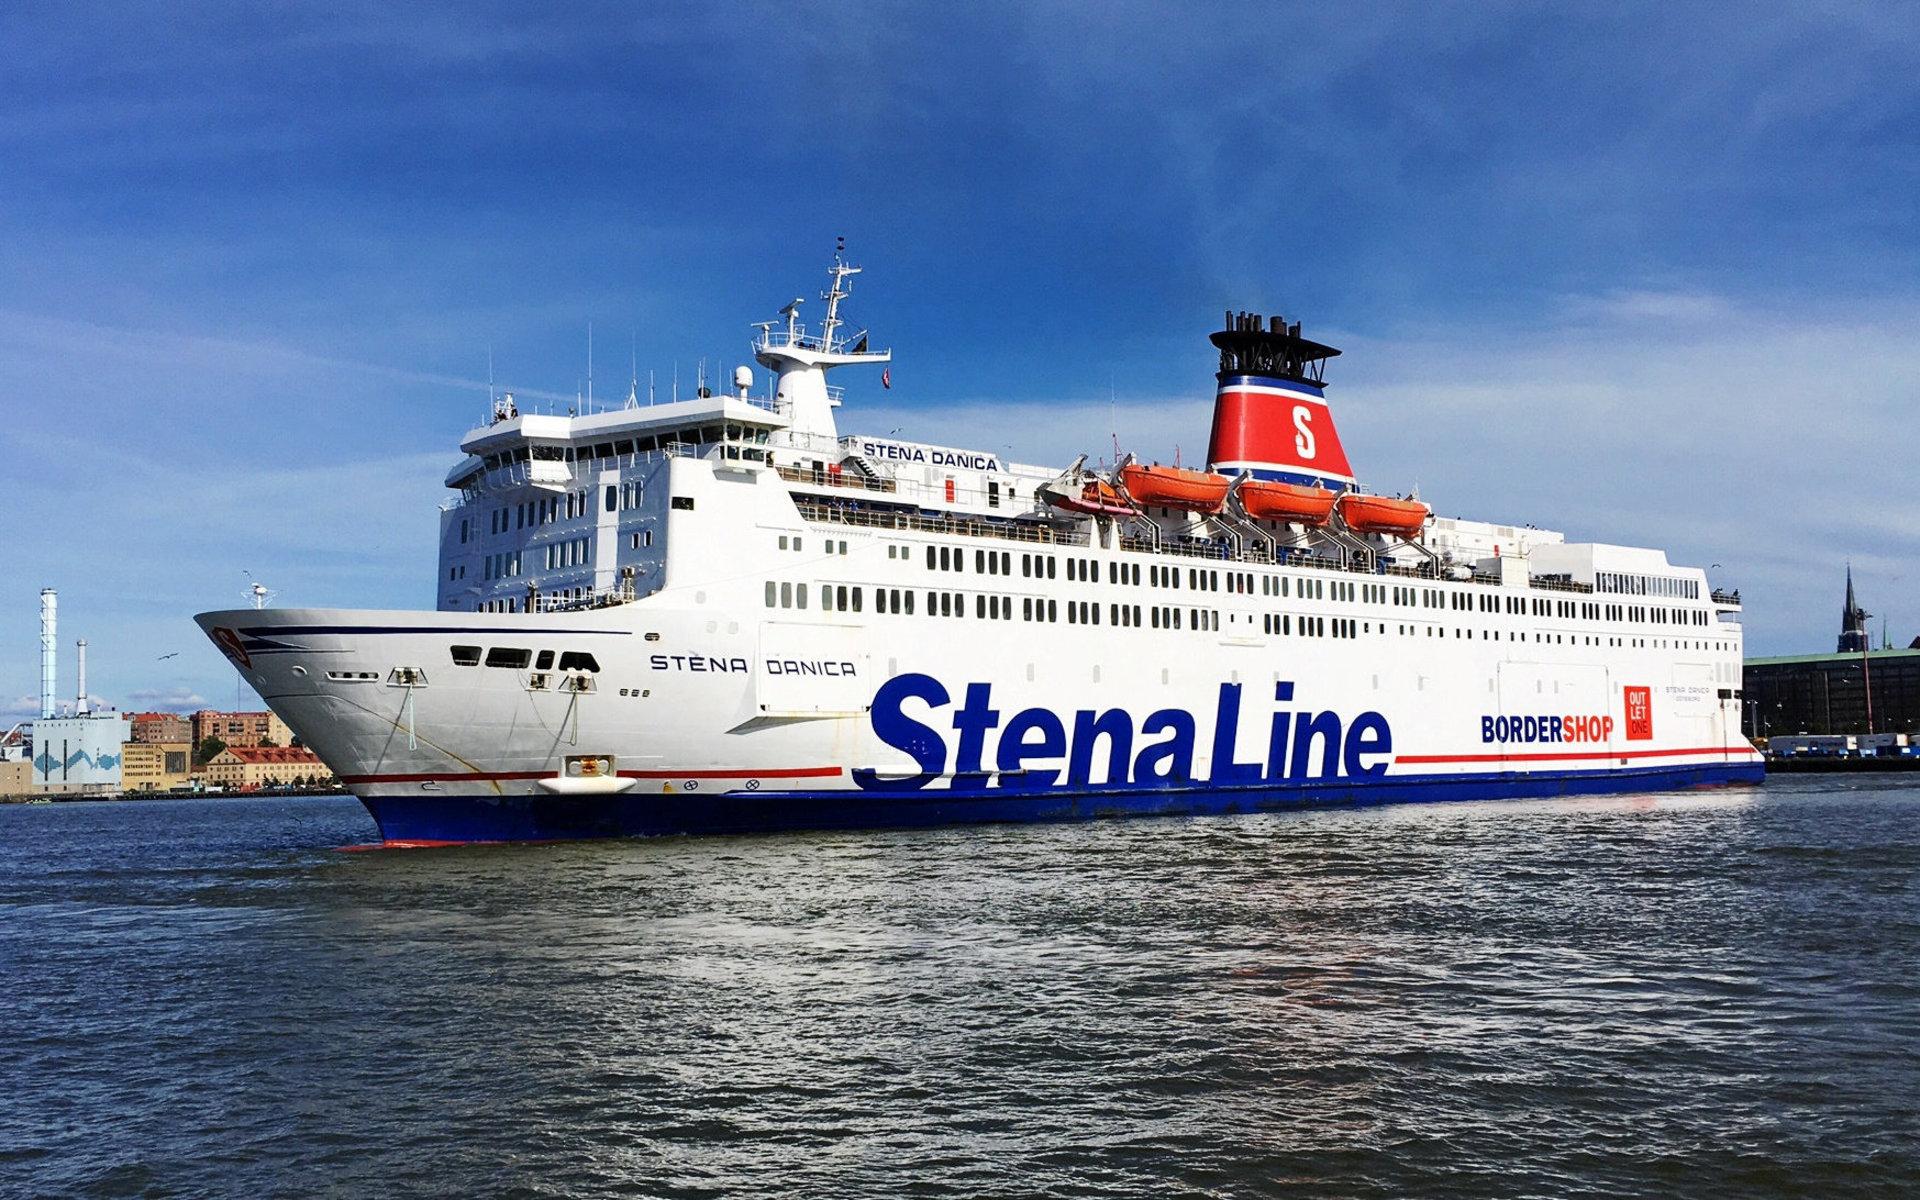 Stena Lines teori är att katten klev på Stena Danica via fartygets bildäck när det låg vid kaj i Göteborg.